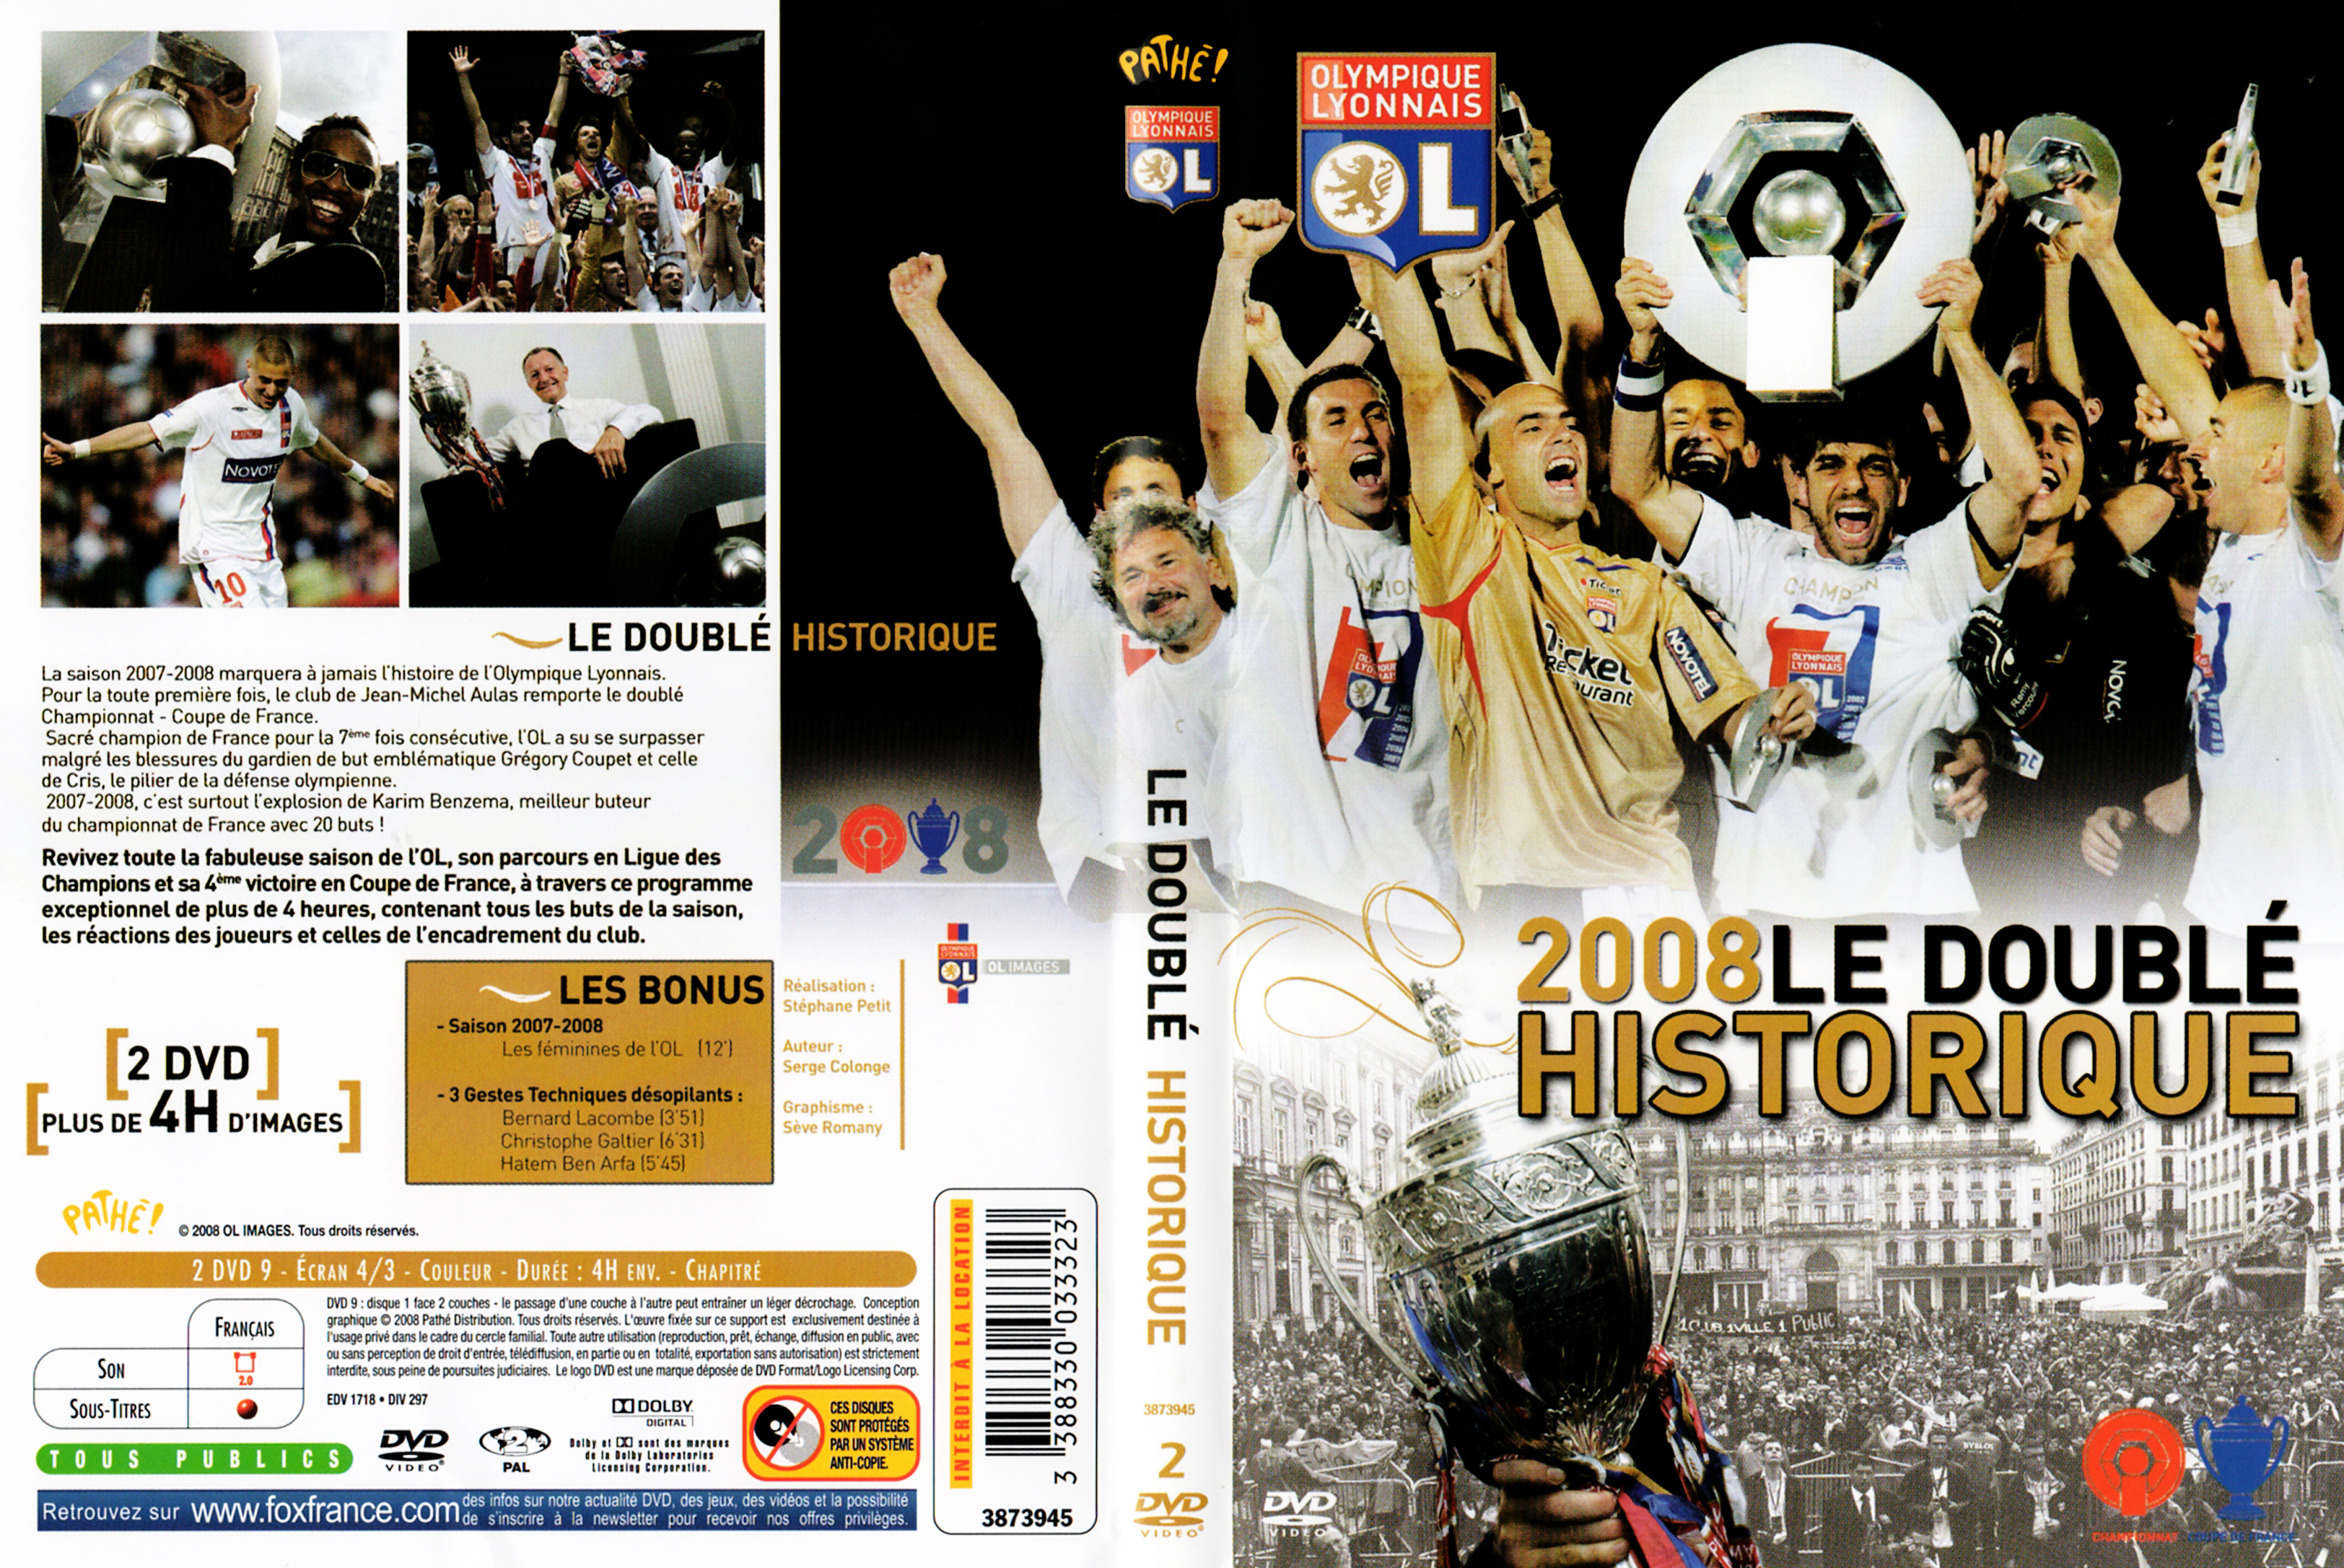 Jaquette DVD Le doubl historique